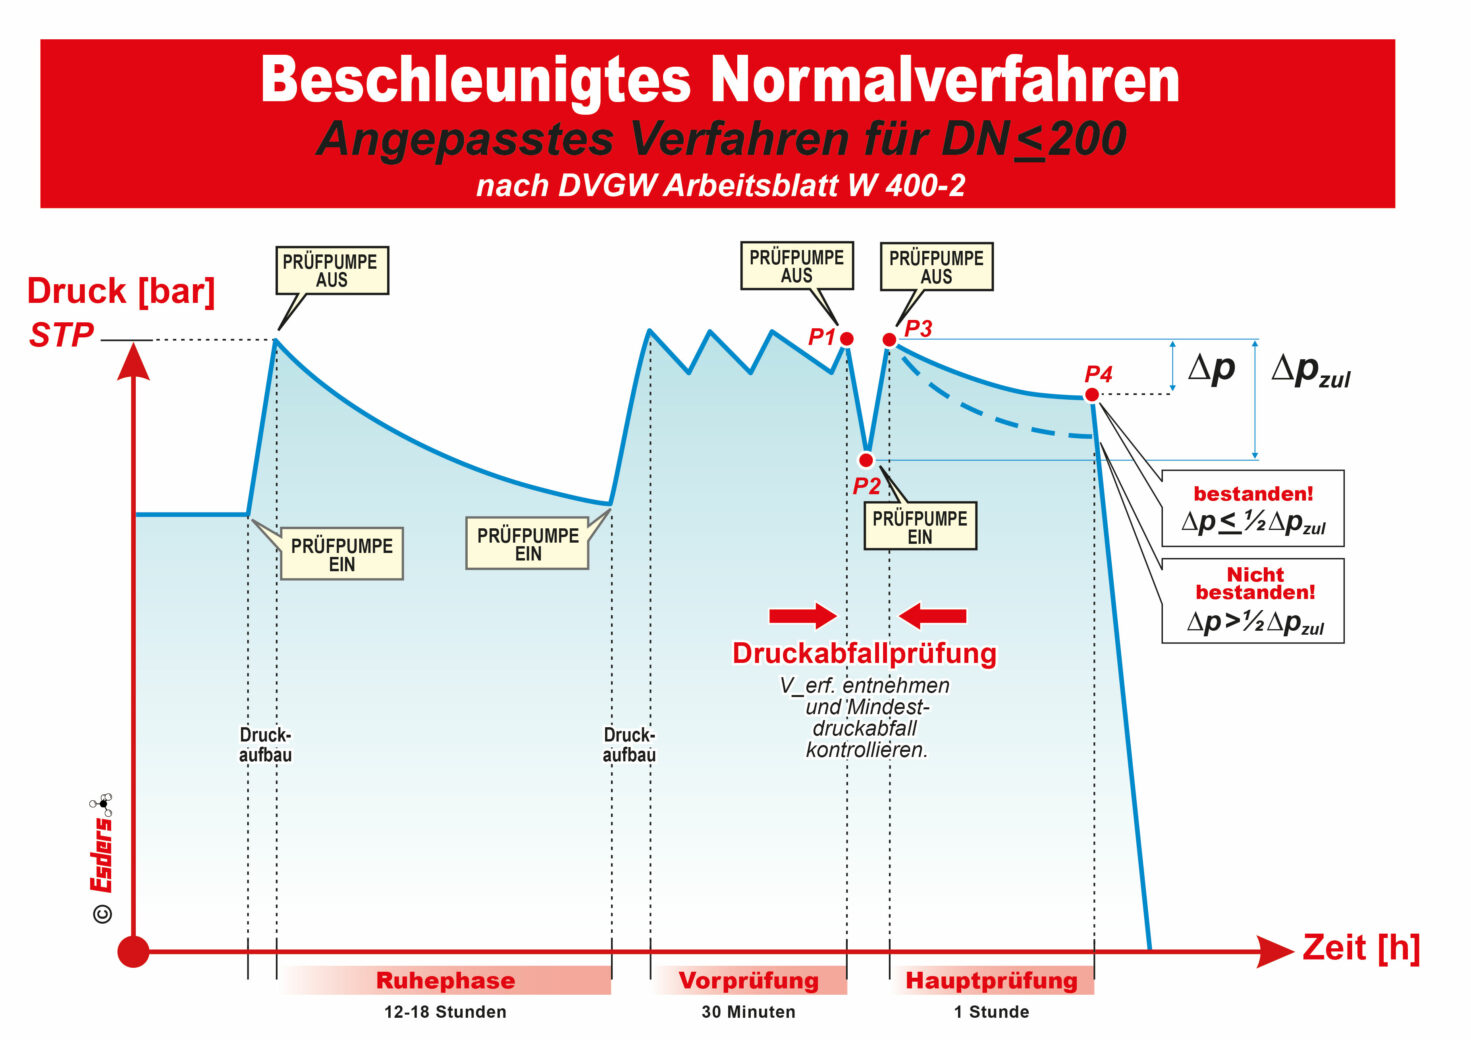 Esders Schaubild angepasstes Verfahren BNV für DN 200